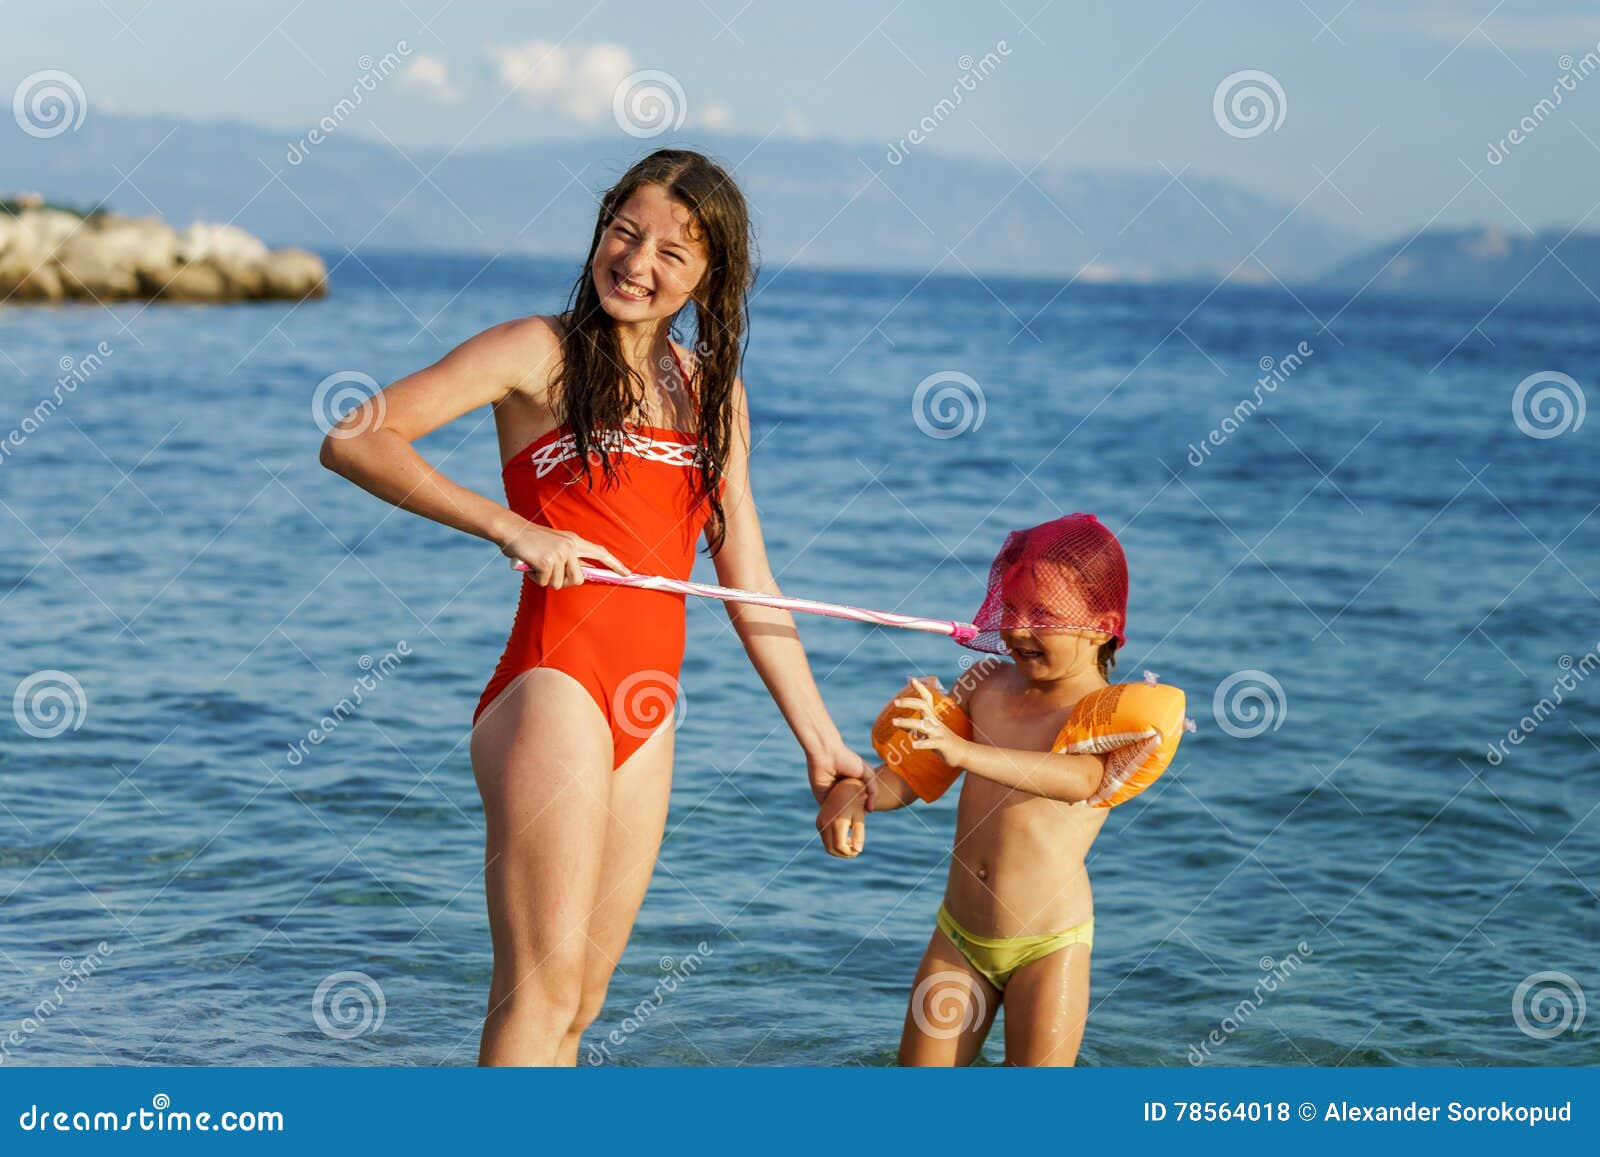 Мама ходила в нижнем белье. Детей переодевают на море. Дети в купальниках на море. С сестрой на море. Детские сестер в купальнике.